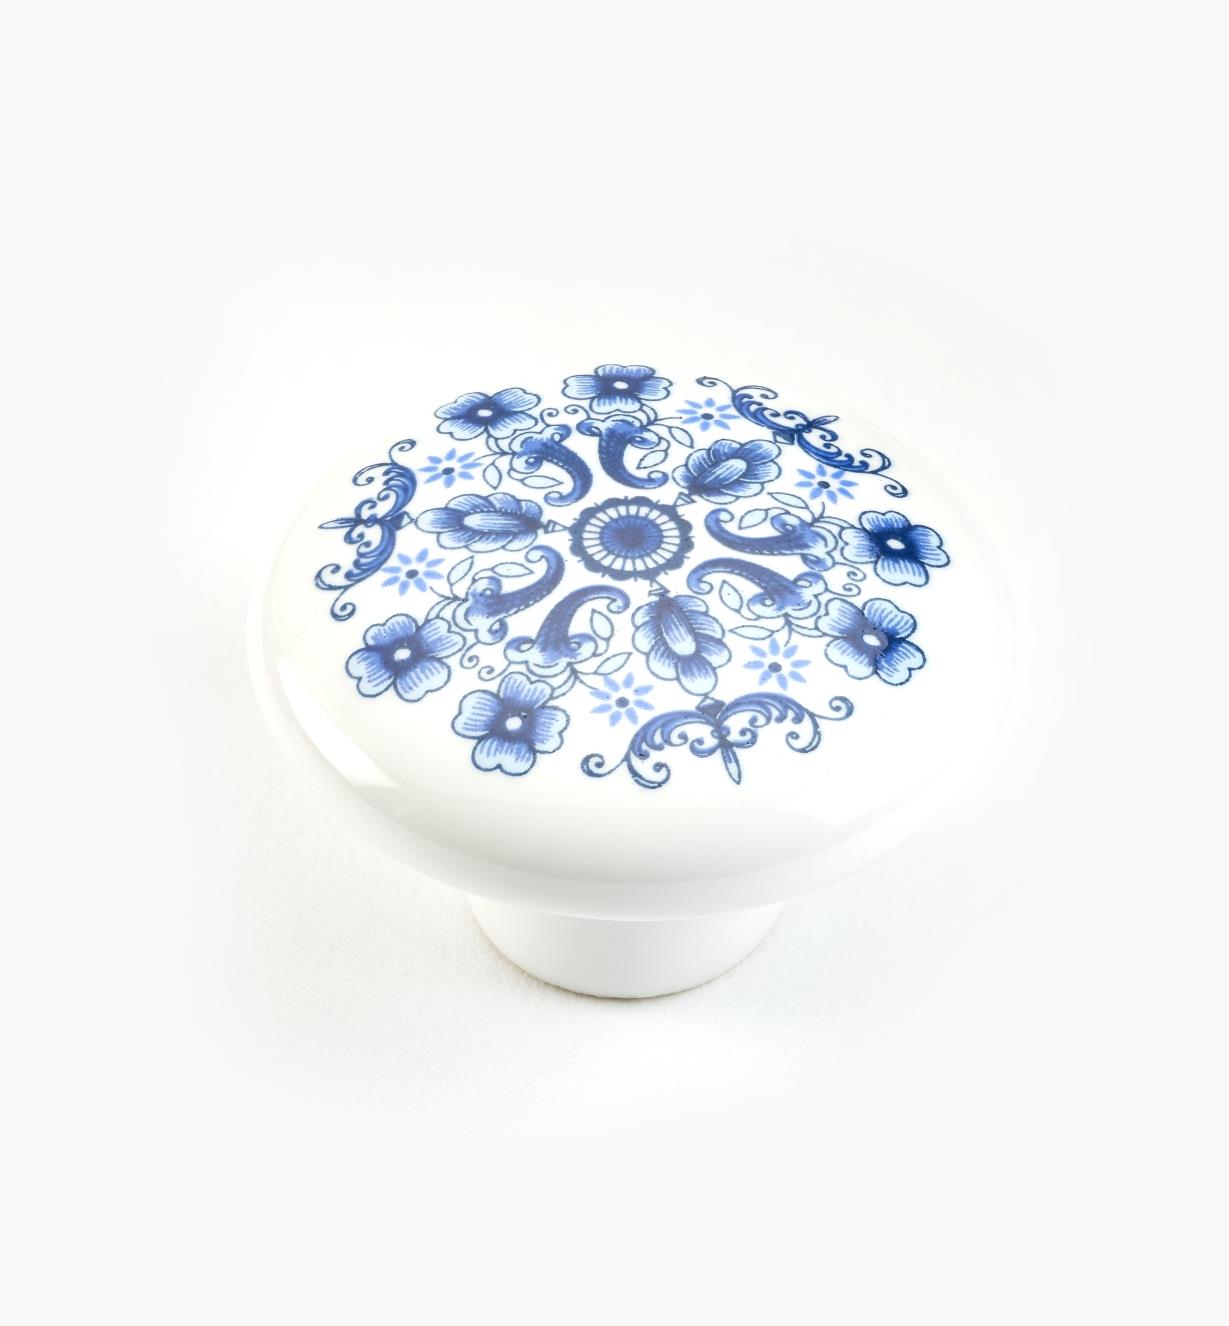 01W0205 - Bouton en céramique à motif de fleurettes, 1 1/2 po x 1 po